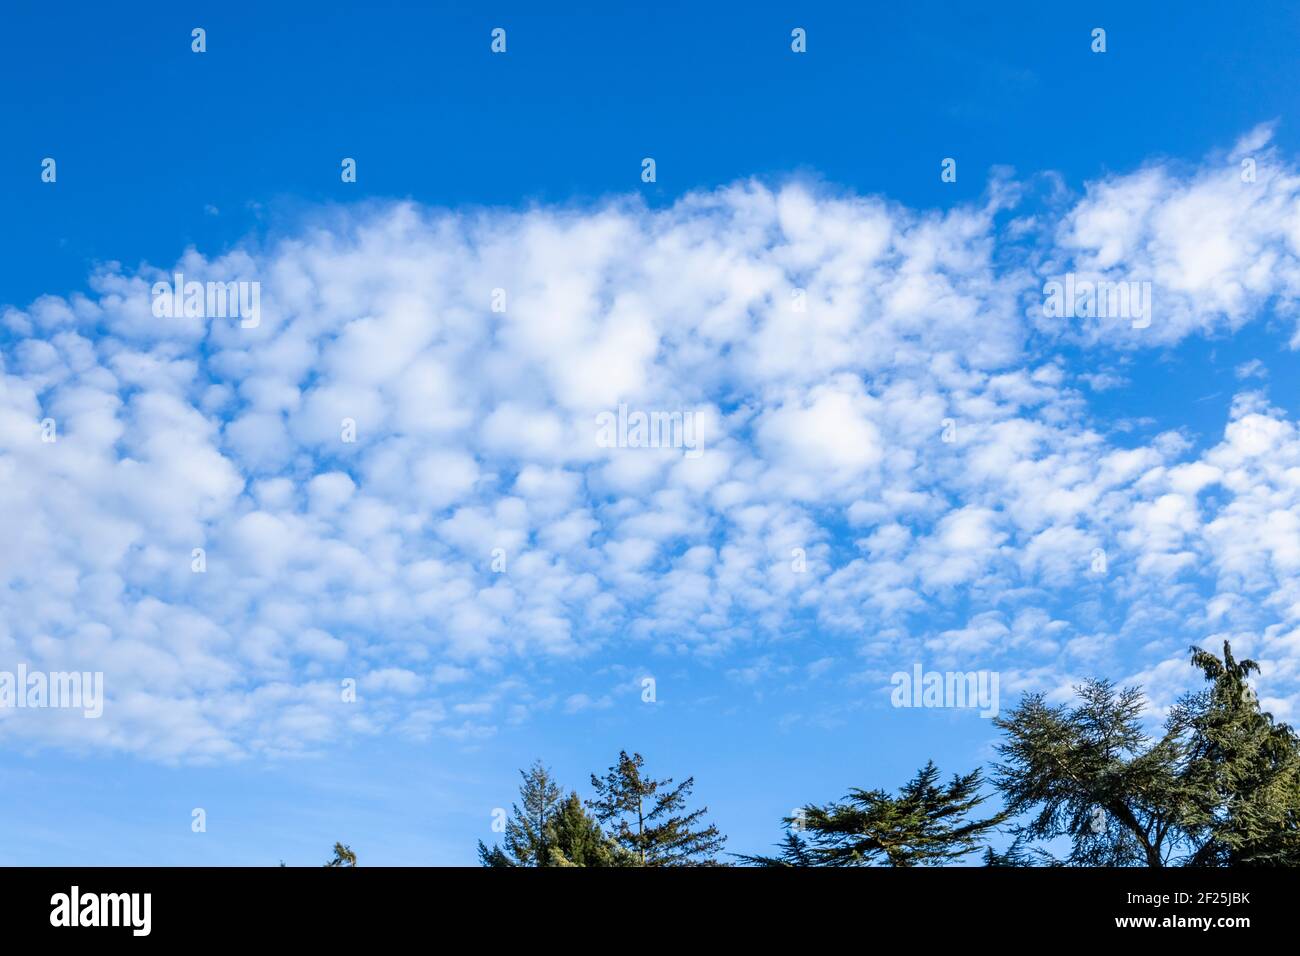 Ciel typique de maquereau sur les arbres : petits nuages blancs moelleux de haute altitude dans un ciel bleu dans le sud-est de l'Angleterre, un indicateur de bonne météo Banque D'Images